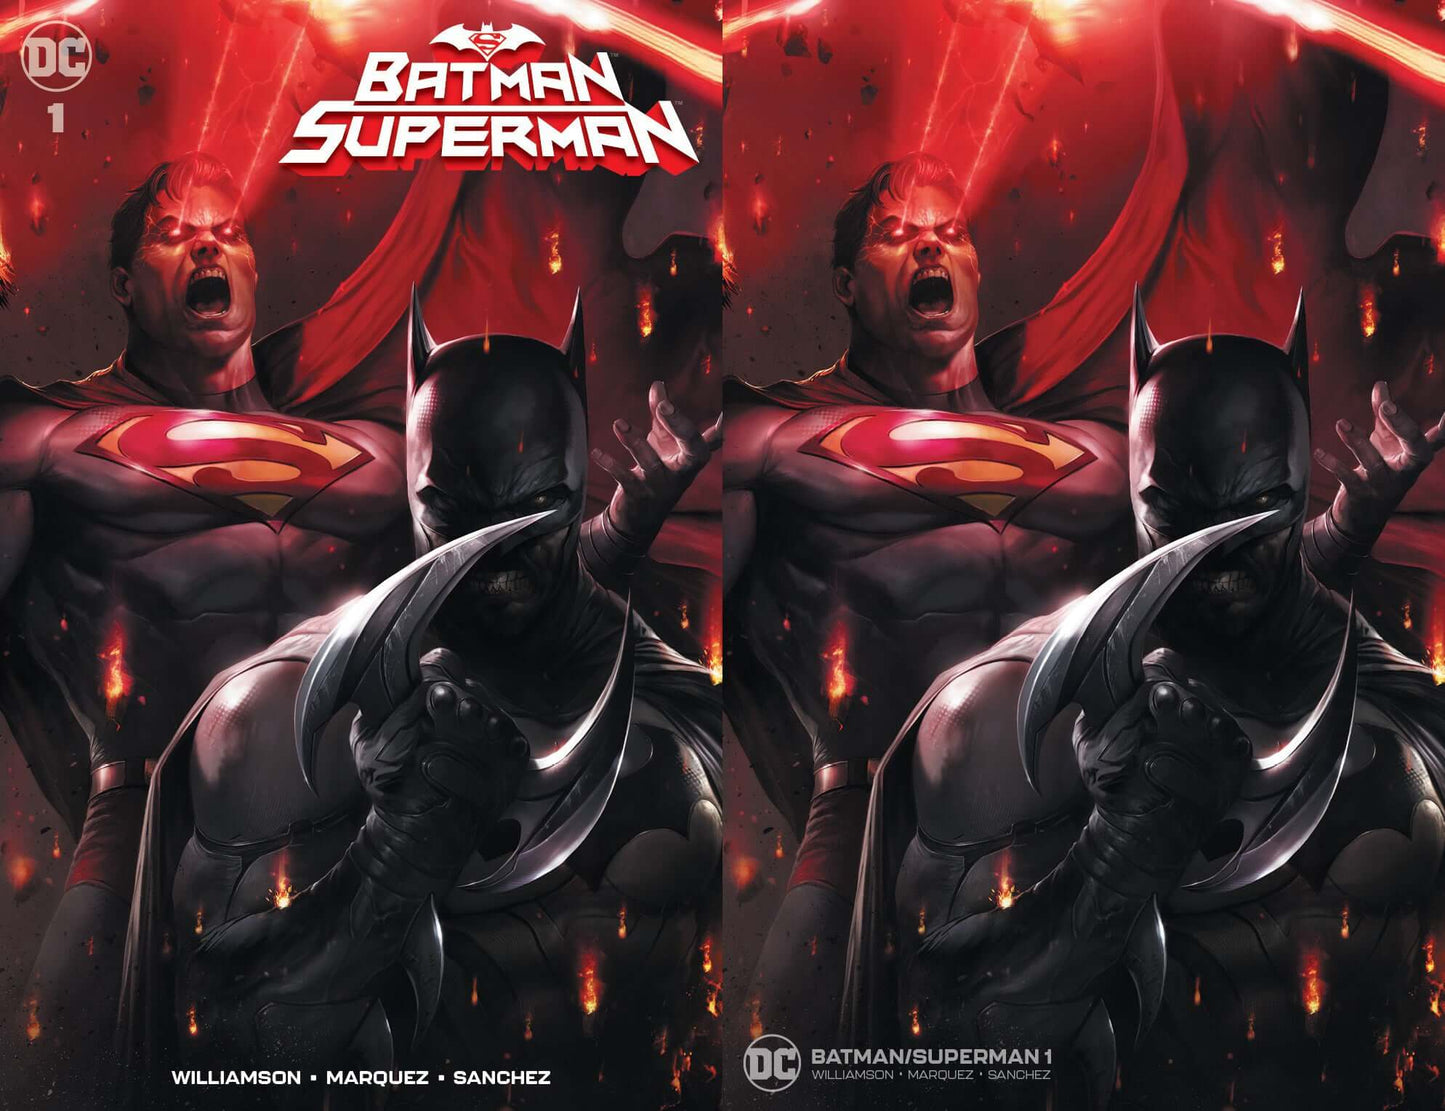 BATMAN SUPERMAN #1 Francesco Mattina Variant Trade + Virgin Set Options (08/28/2019) DC